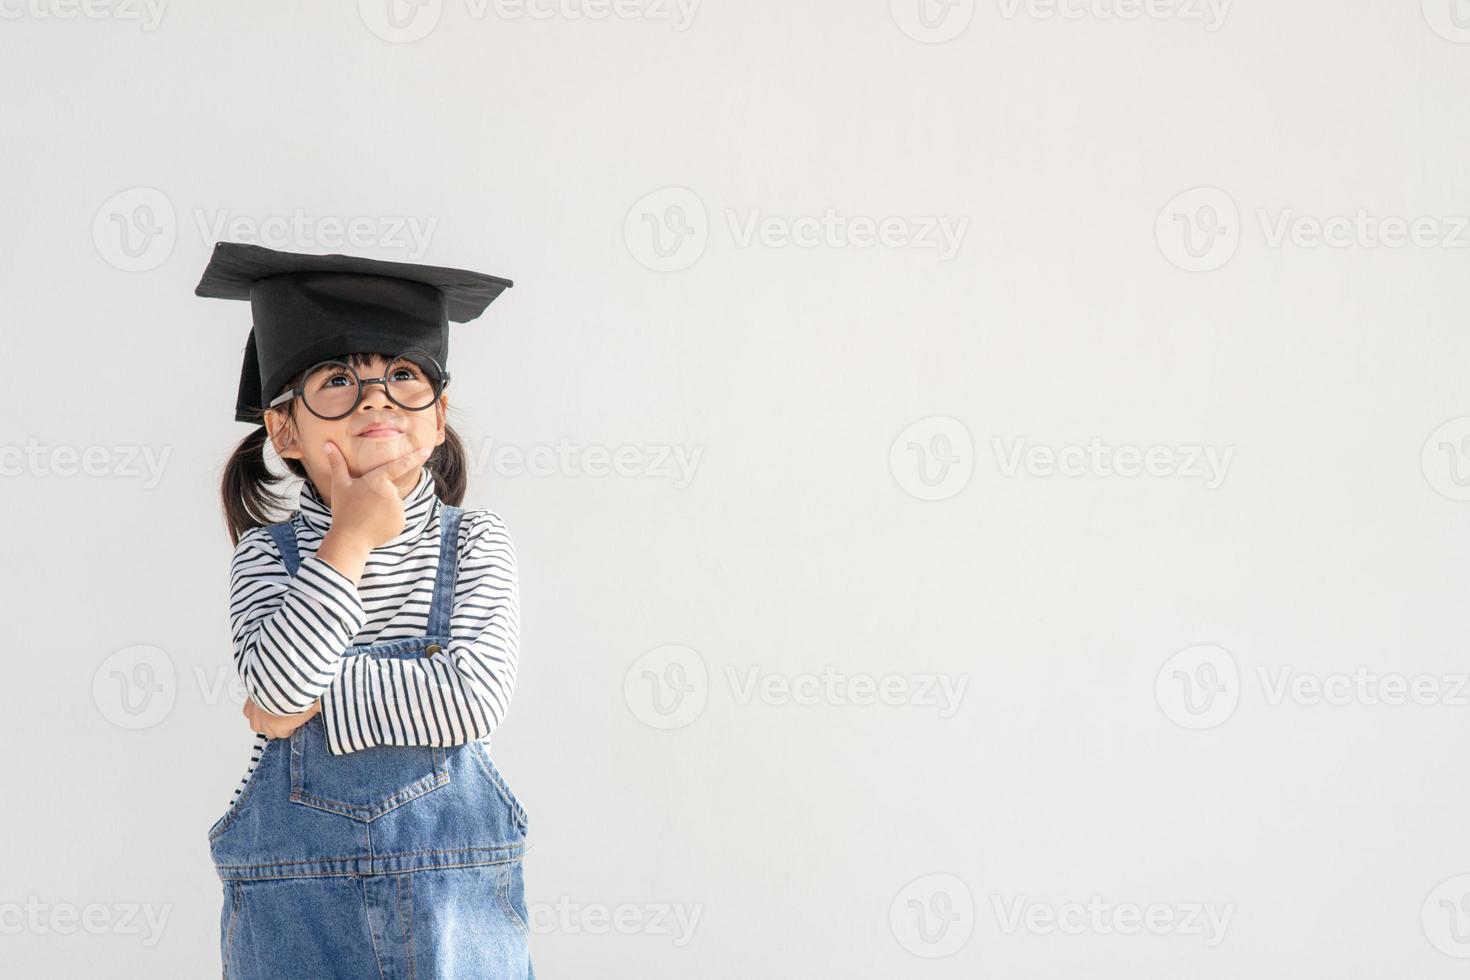 gelukkig aziatisch schoolkind afgestudeerd denken met afstudeerpet foto